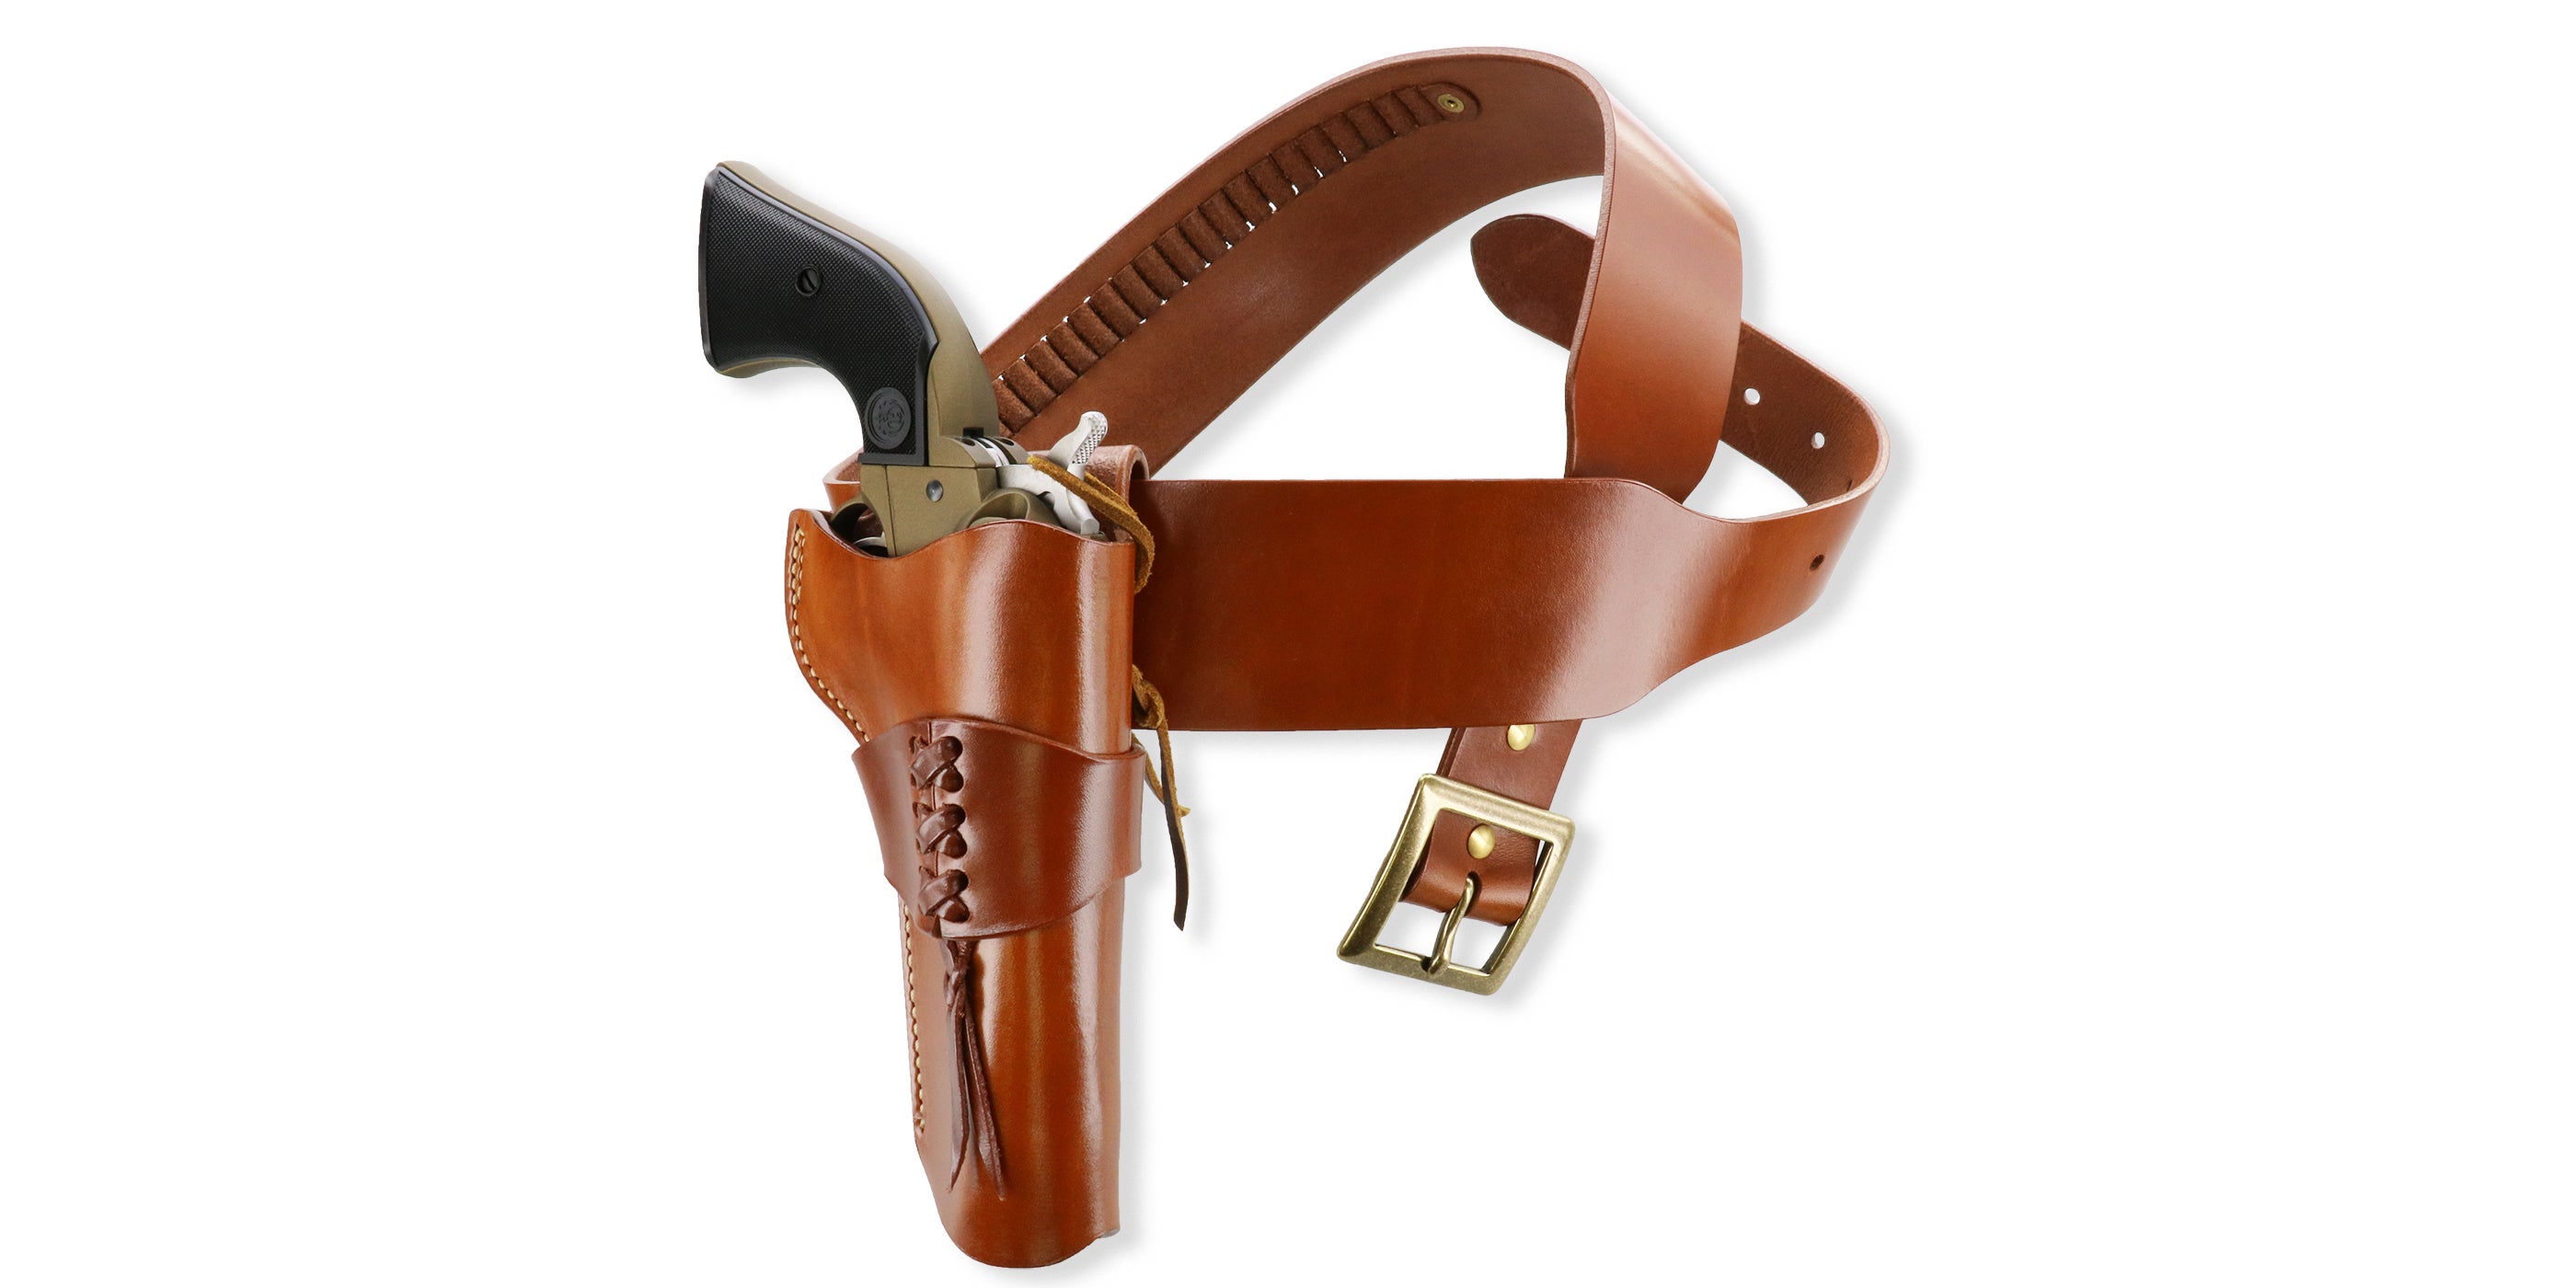 wrangler belt price